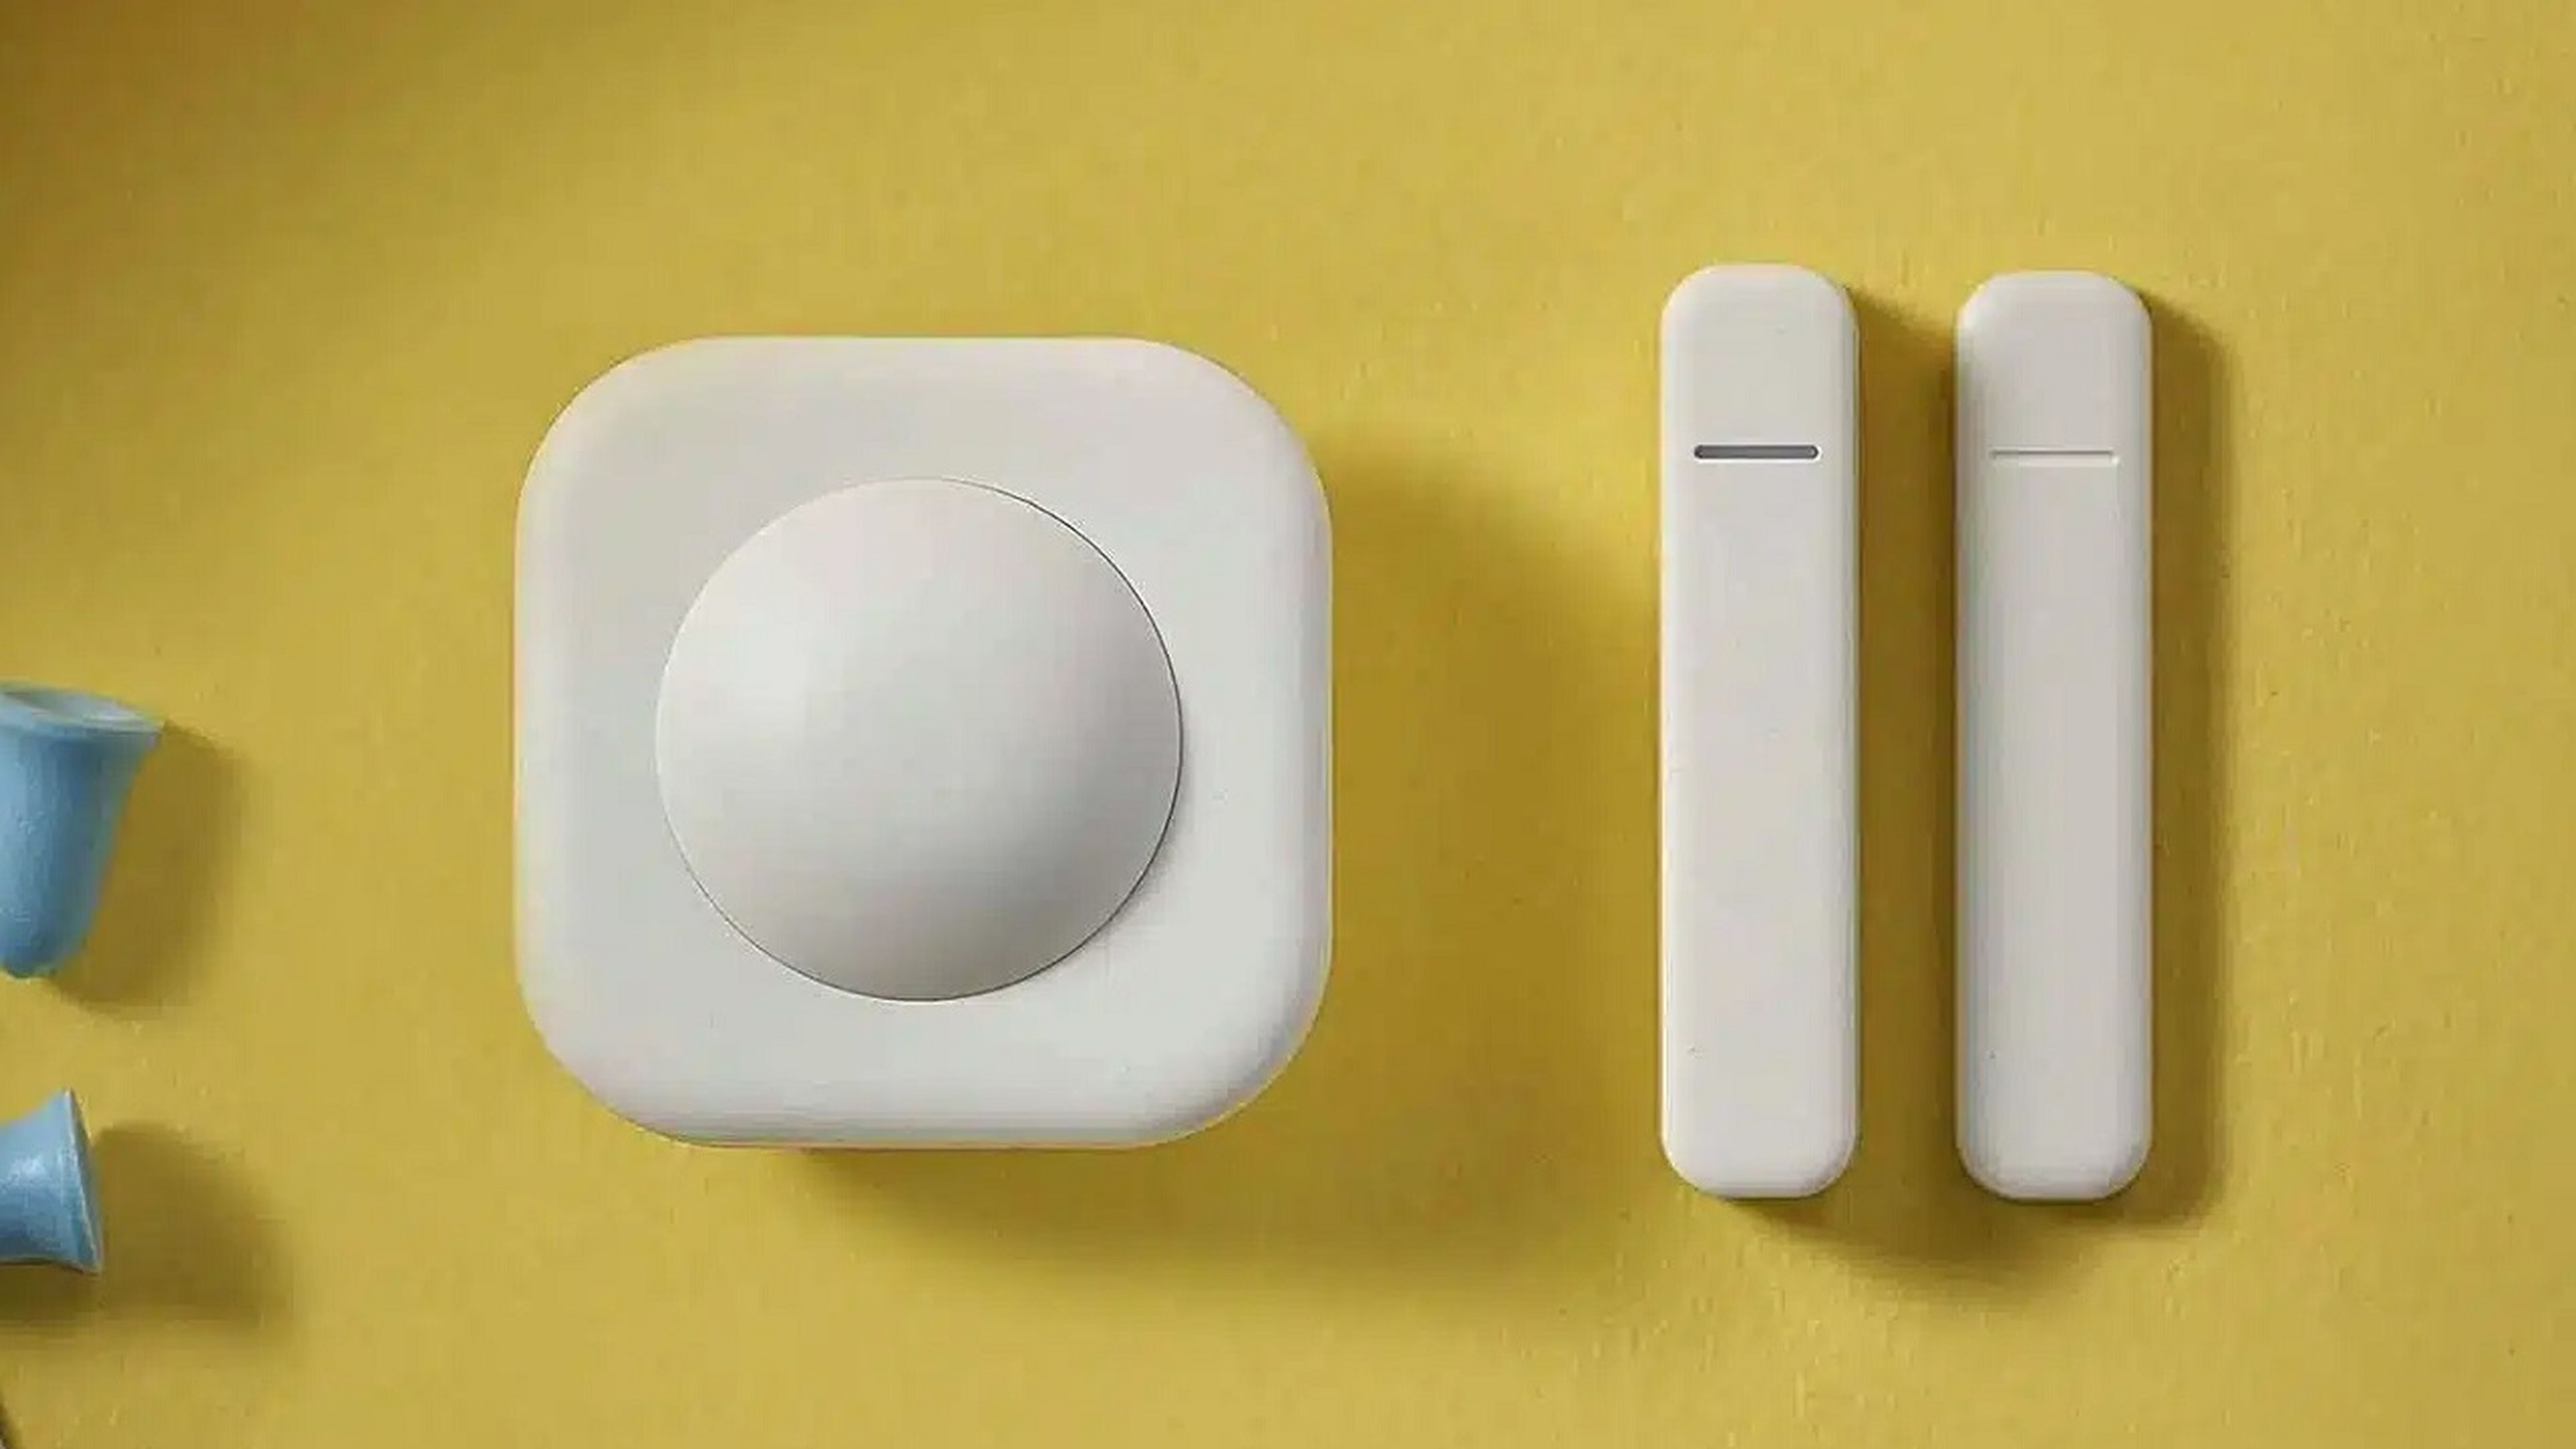 Así son los 3 nuevos sensores de Ikea baratos para volver tu hogar inteligente